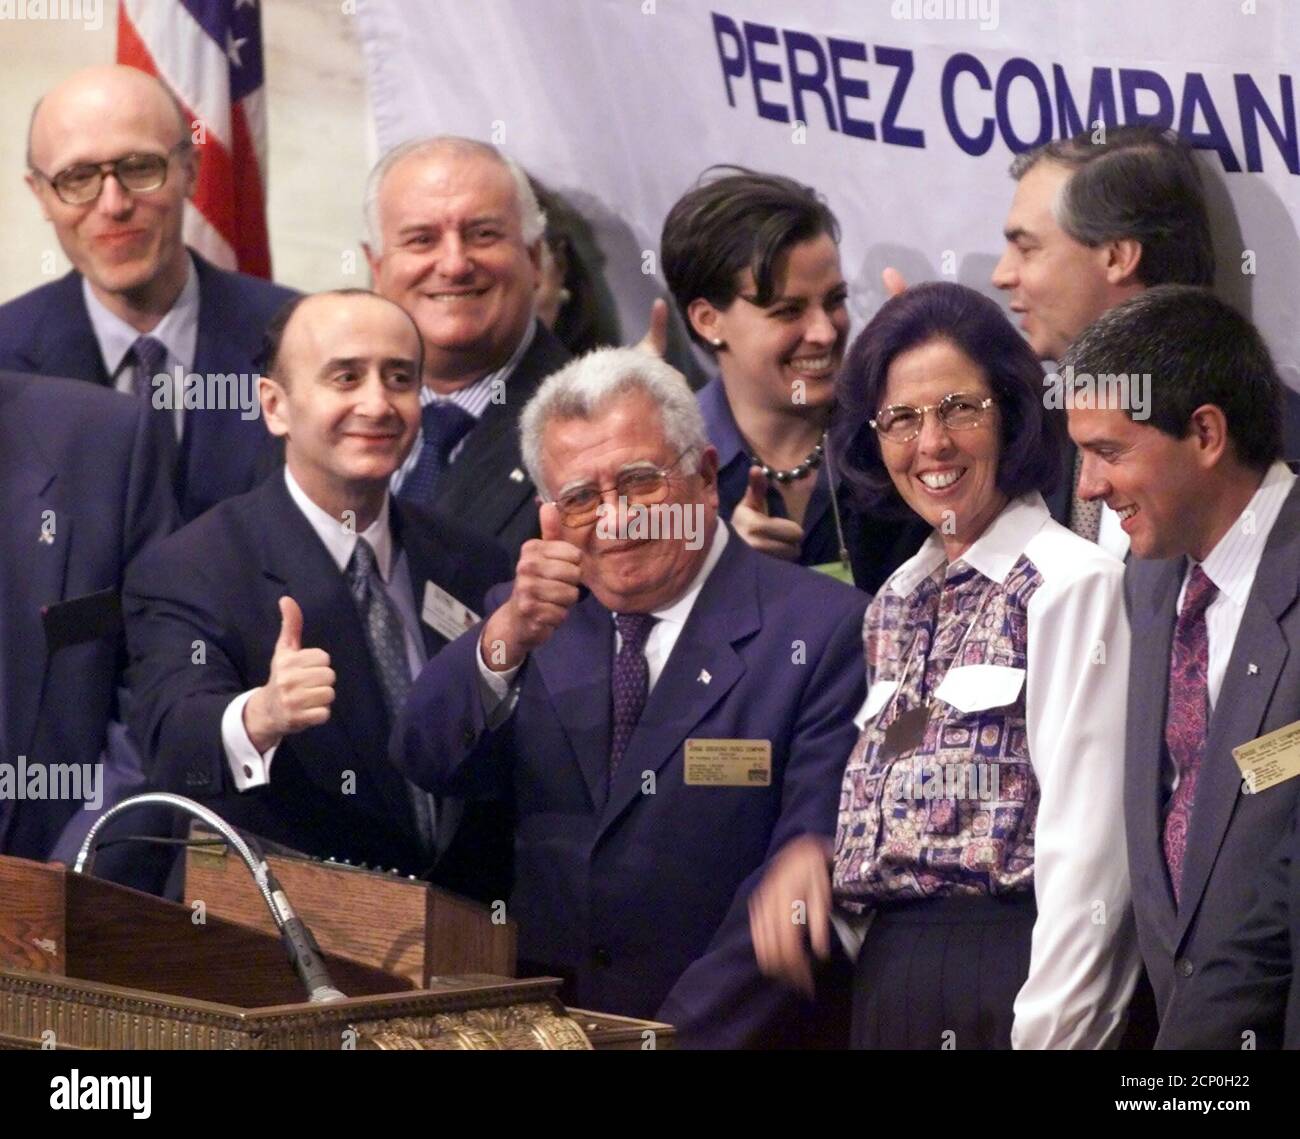 Jorge Gregorio Pérez Companc, (C) el presidente de PC Holdings S.A., hace  gestos con el presidente de la Bolsa de Nueva York, Richard Grasso (2º L)  antes de llamar a la campana